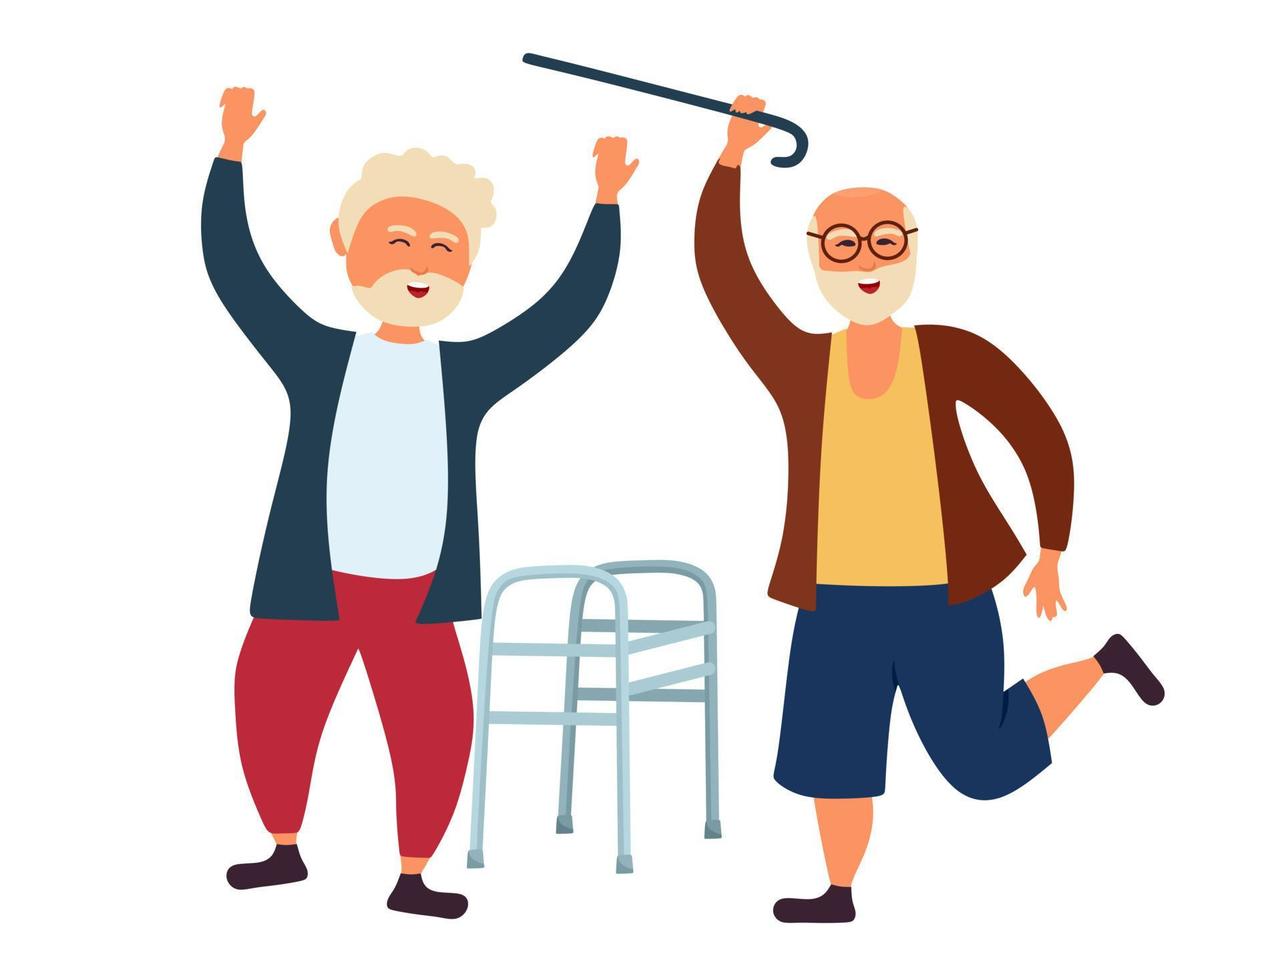 los viejitos del abuelo están bailando tirando un bastón y un andador. el hombre mayor se está divirtiendo. ilustración vectorial aislada en un fondo blanco. vector